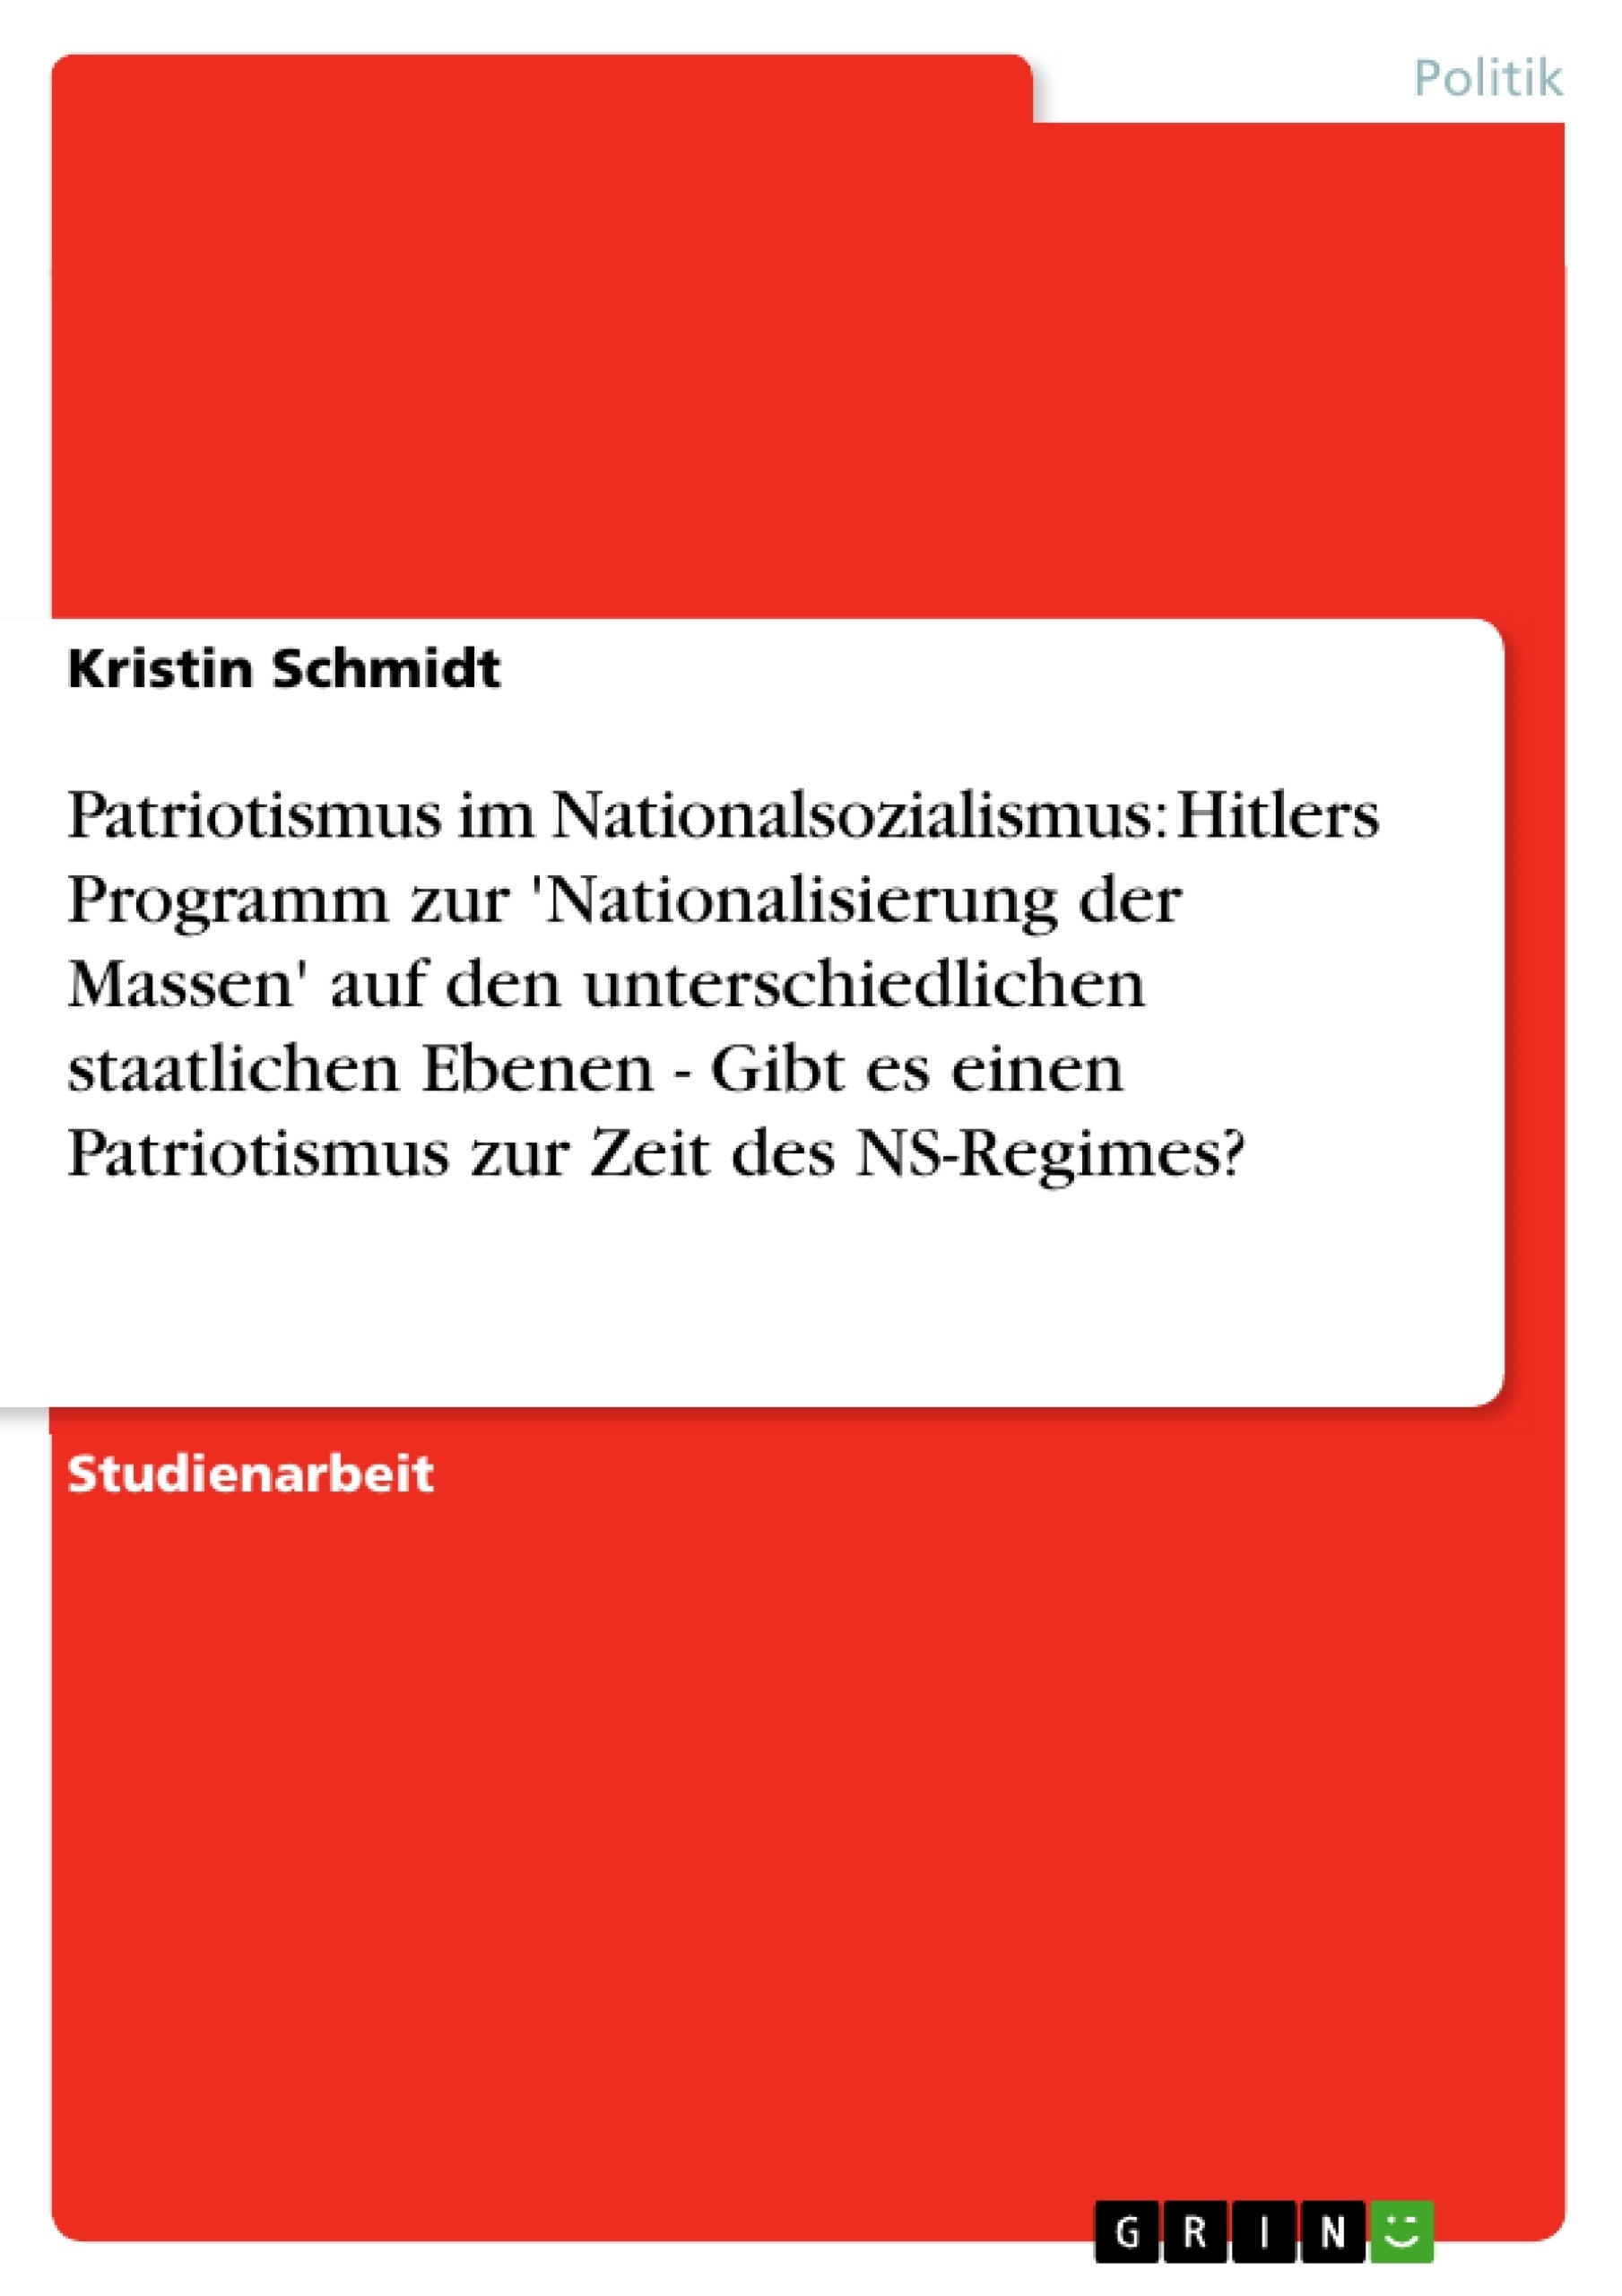 Title: Patriotismus im Nationalsozialismus: Hitlers Programm zur 'Nationalisierung der Massen' auf den unterschiedlichen staatlichen Ebenen - Gibt es einen Patriotismus zur Zeit des NS-Regimes?